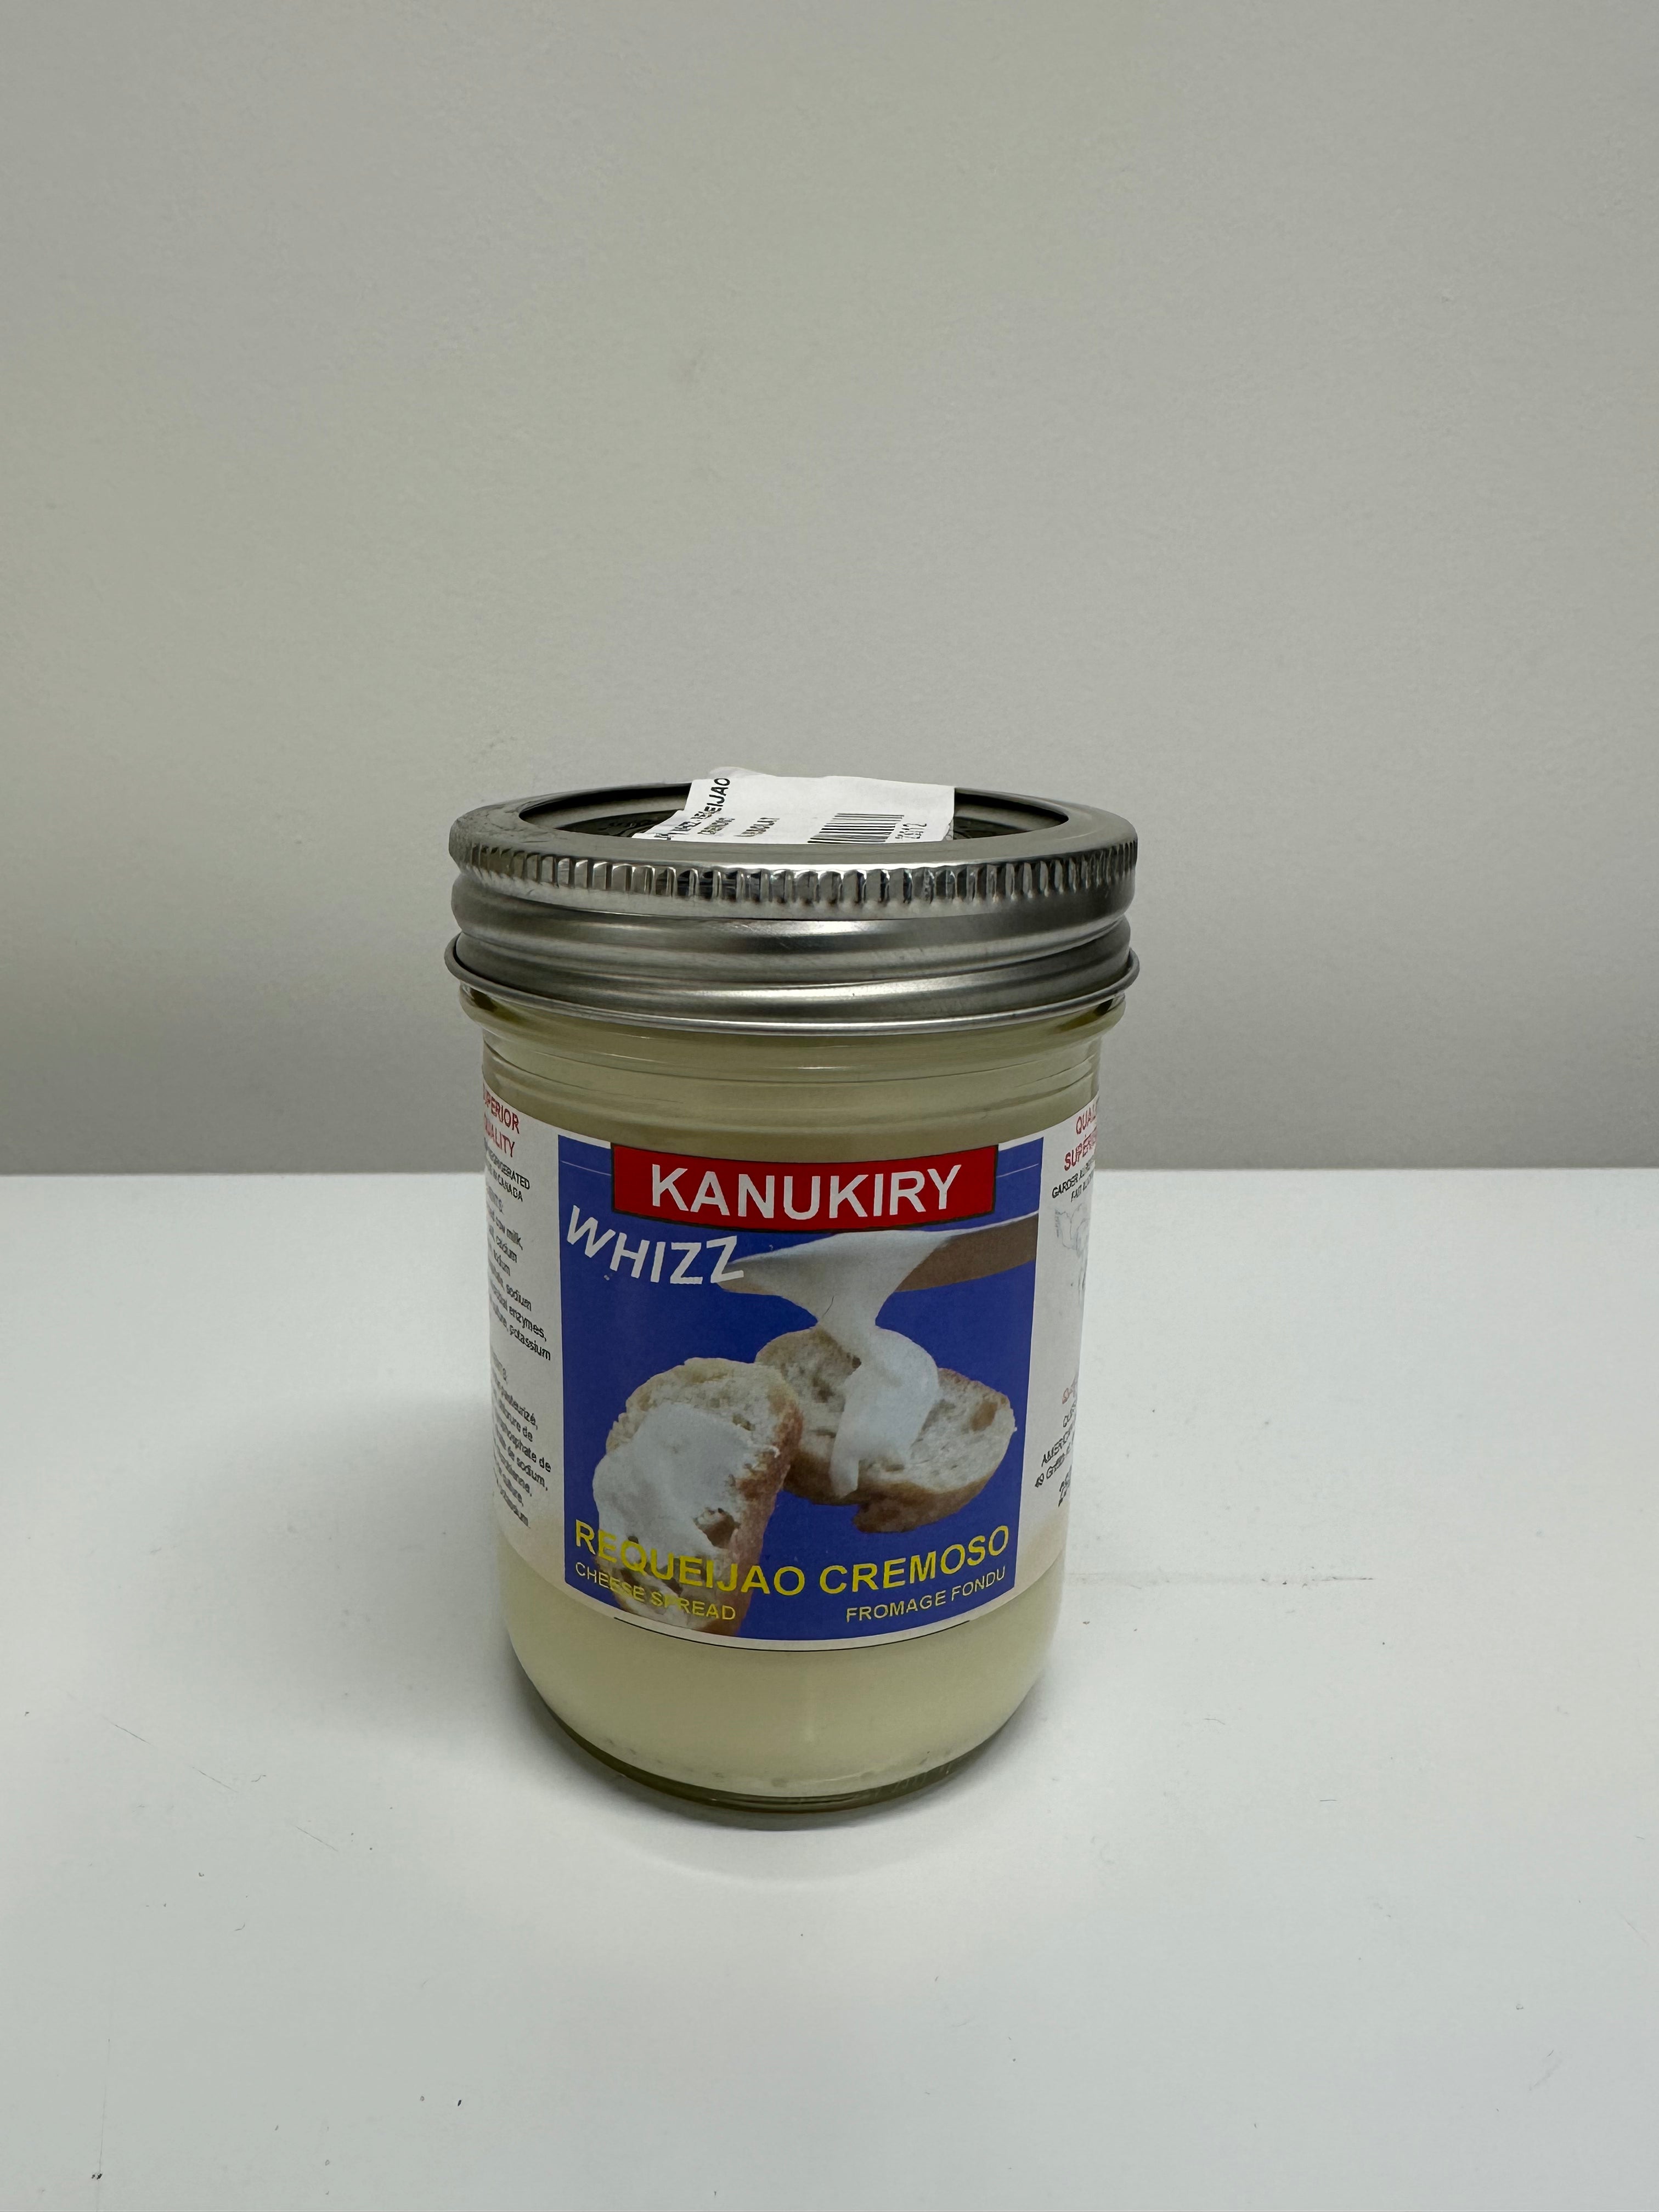 QUESOLAT - Kanukiry Whizz (fromage à tartiner) - VENTE FINALE - EXPIREE ou PROCHE DE L'EXPIRATION